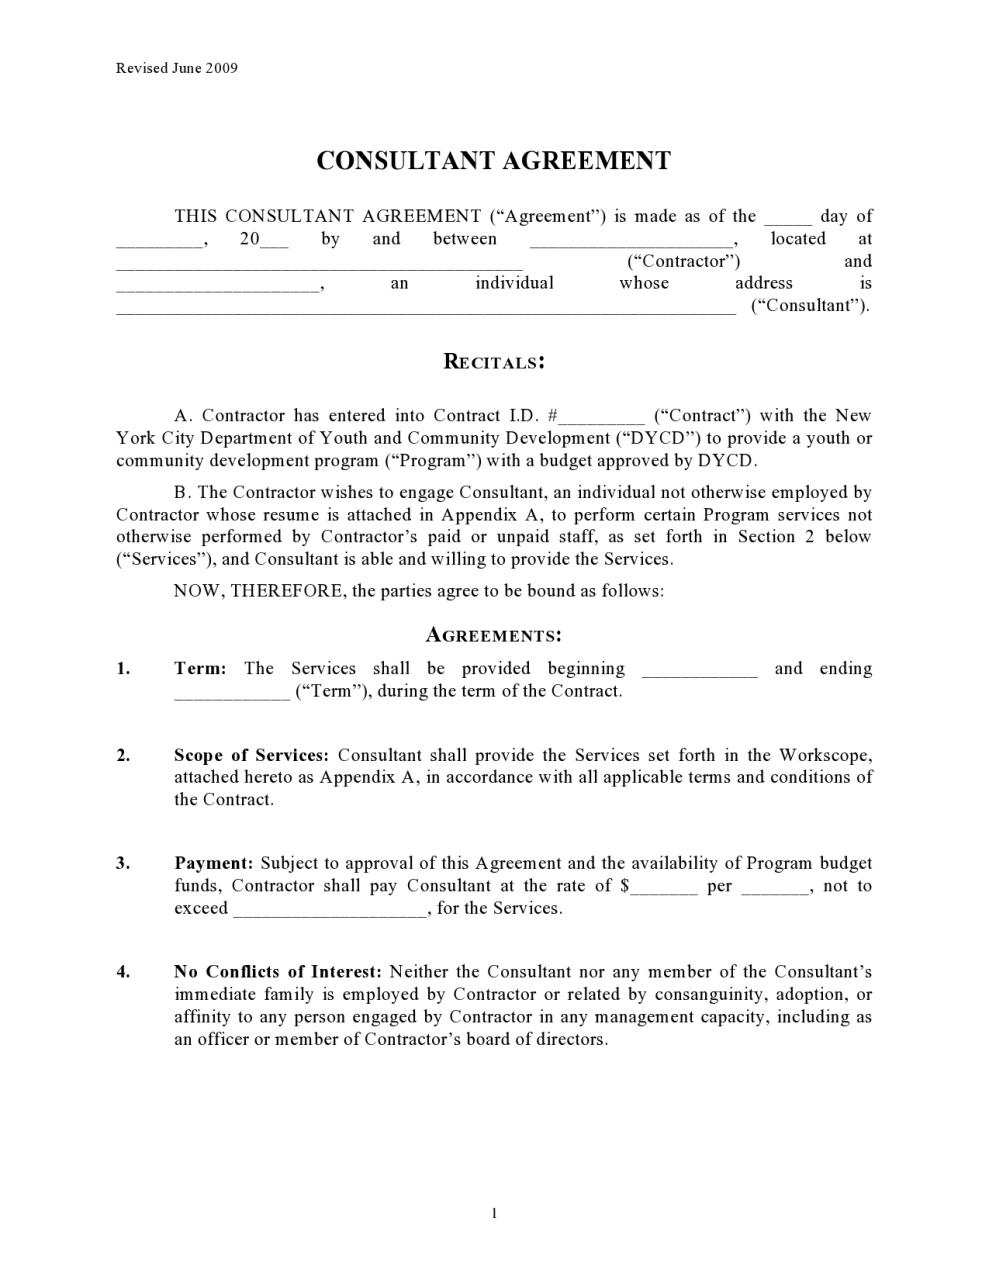 Plantilla de contrato de consultoría gratuita 12